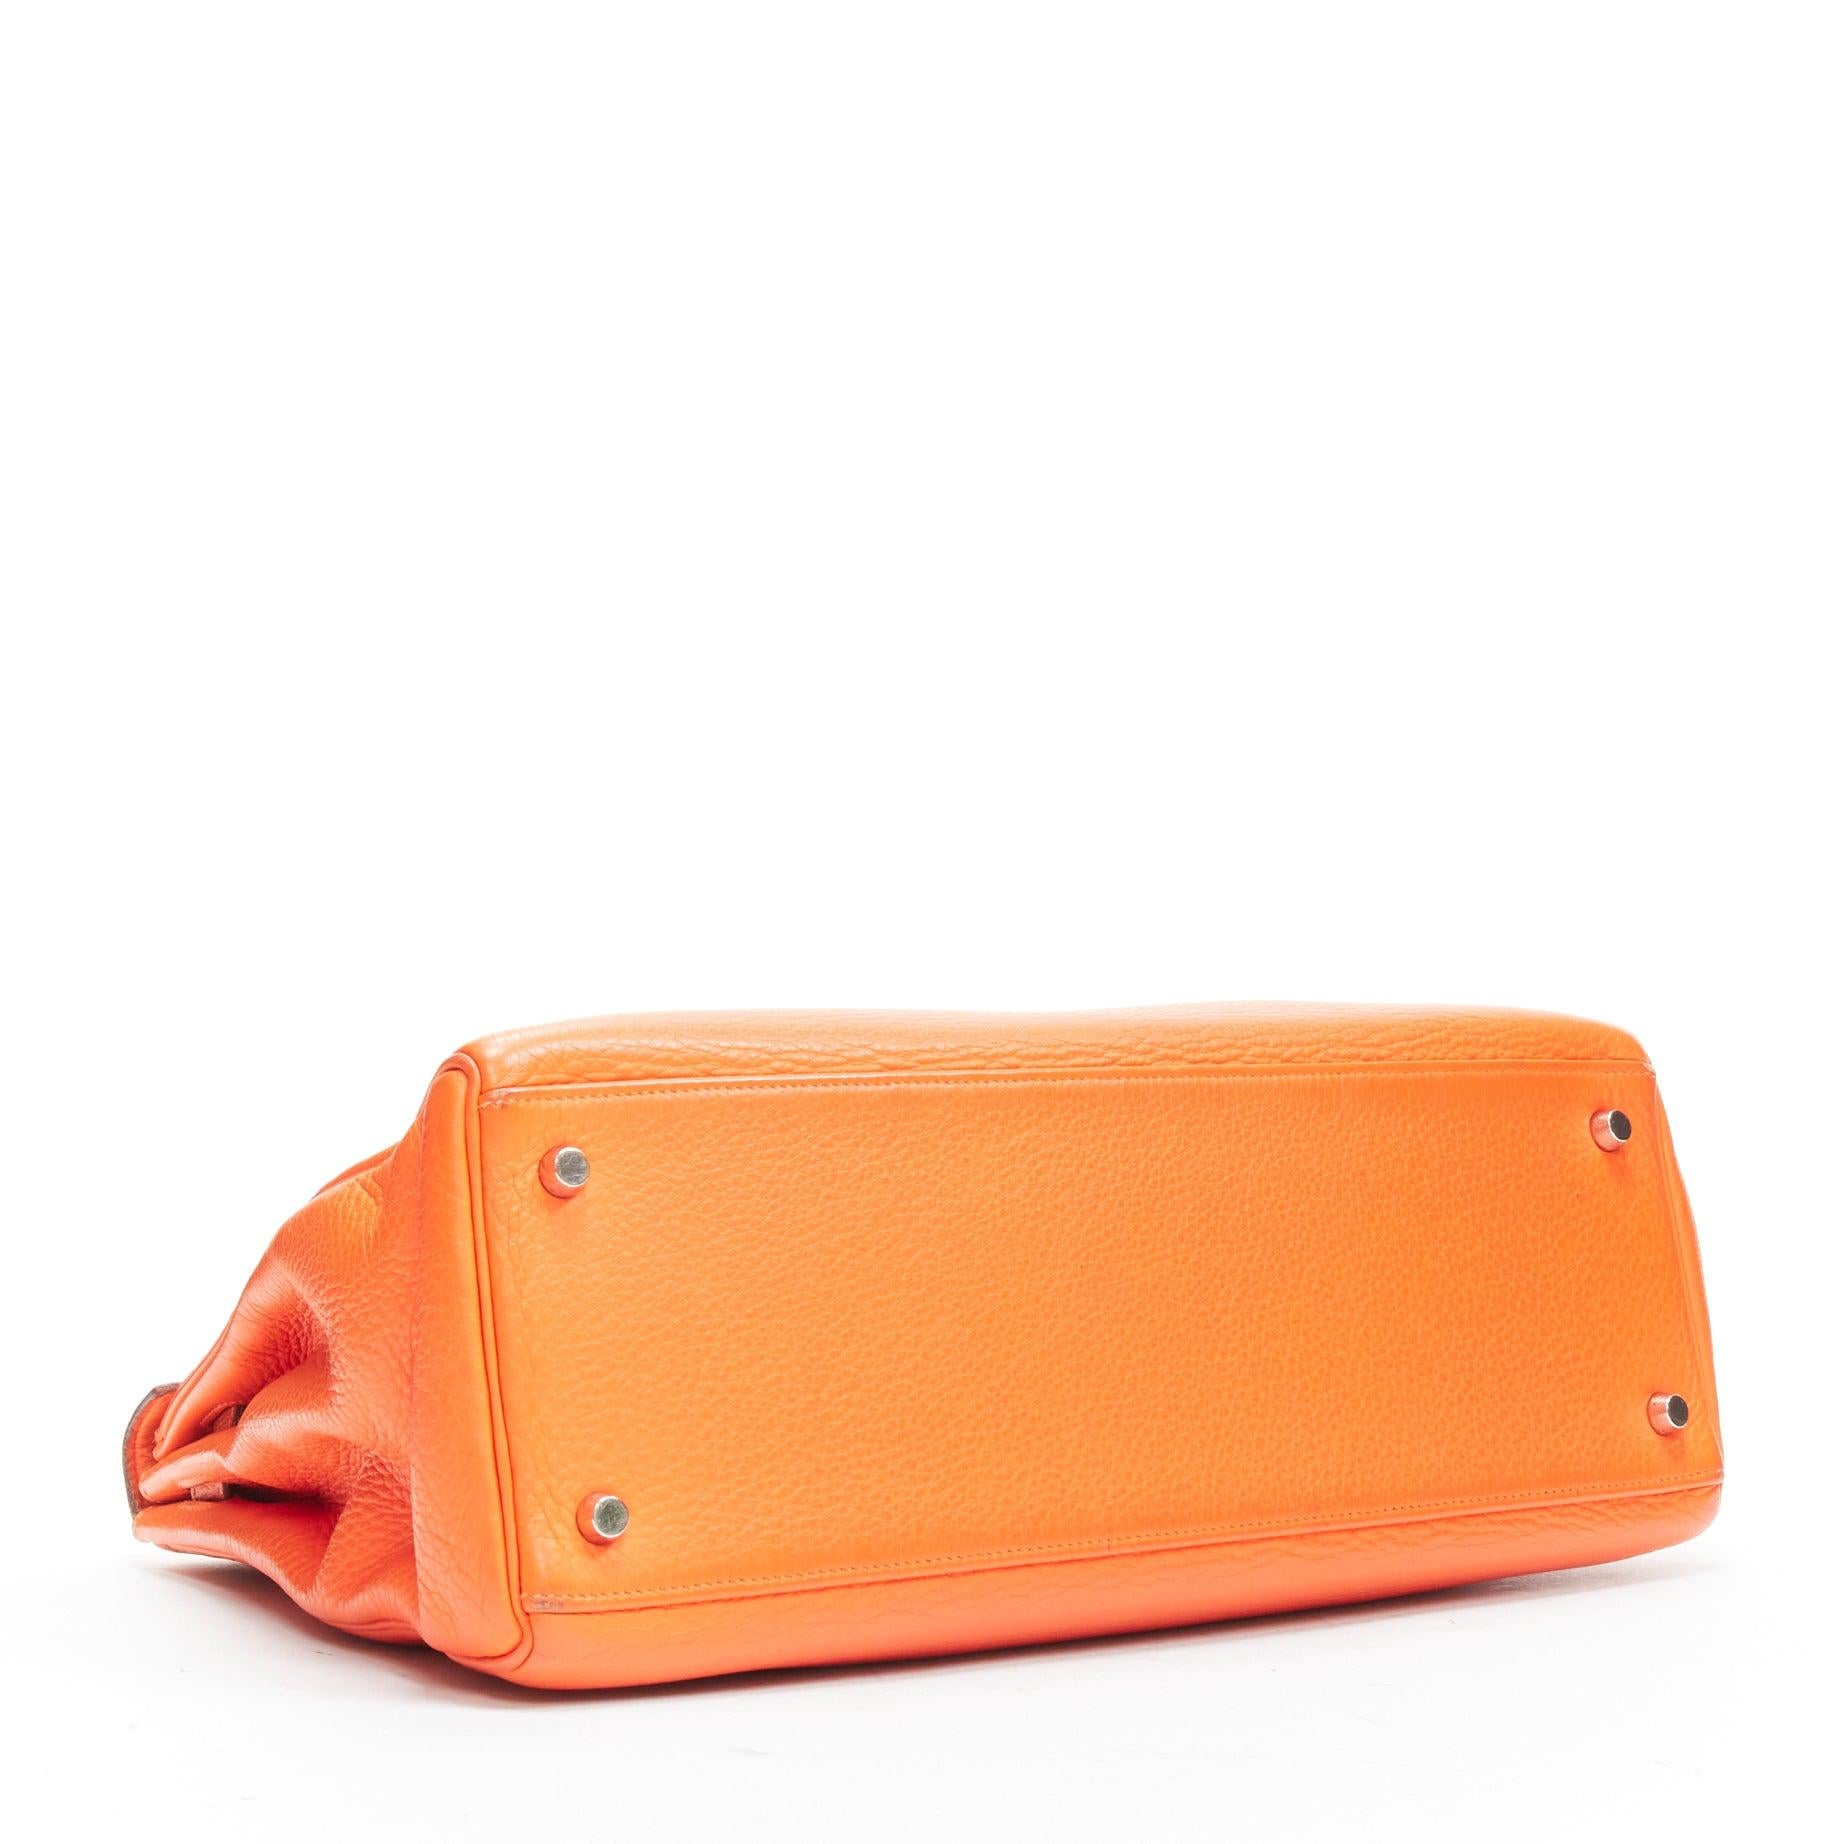 HERMES Kelly 32 PHW orange togo leather silver buckle top handle shoulder bag For Sale 3